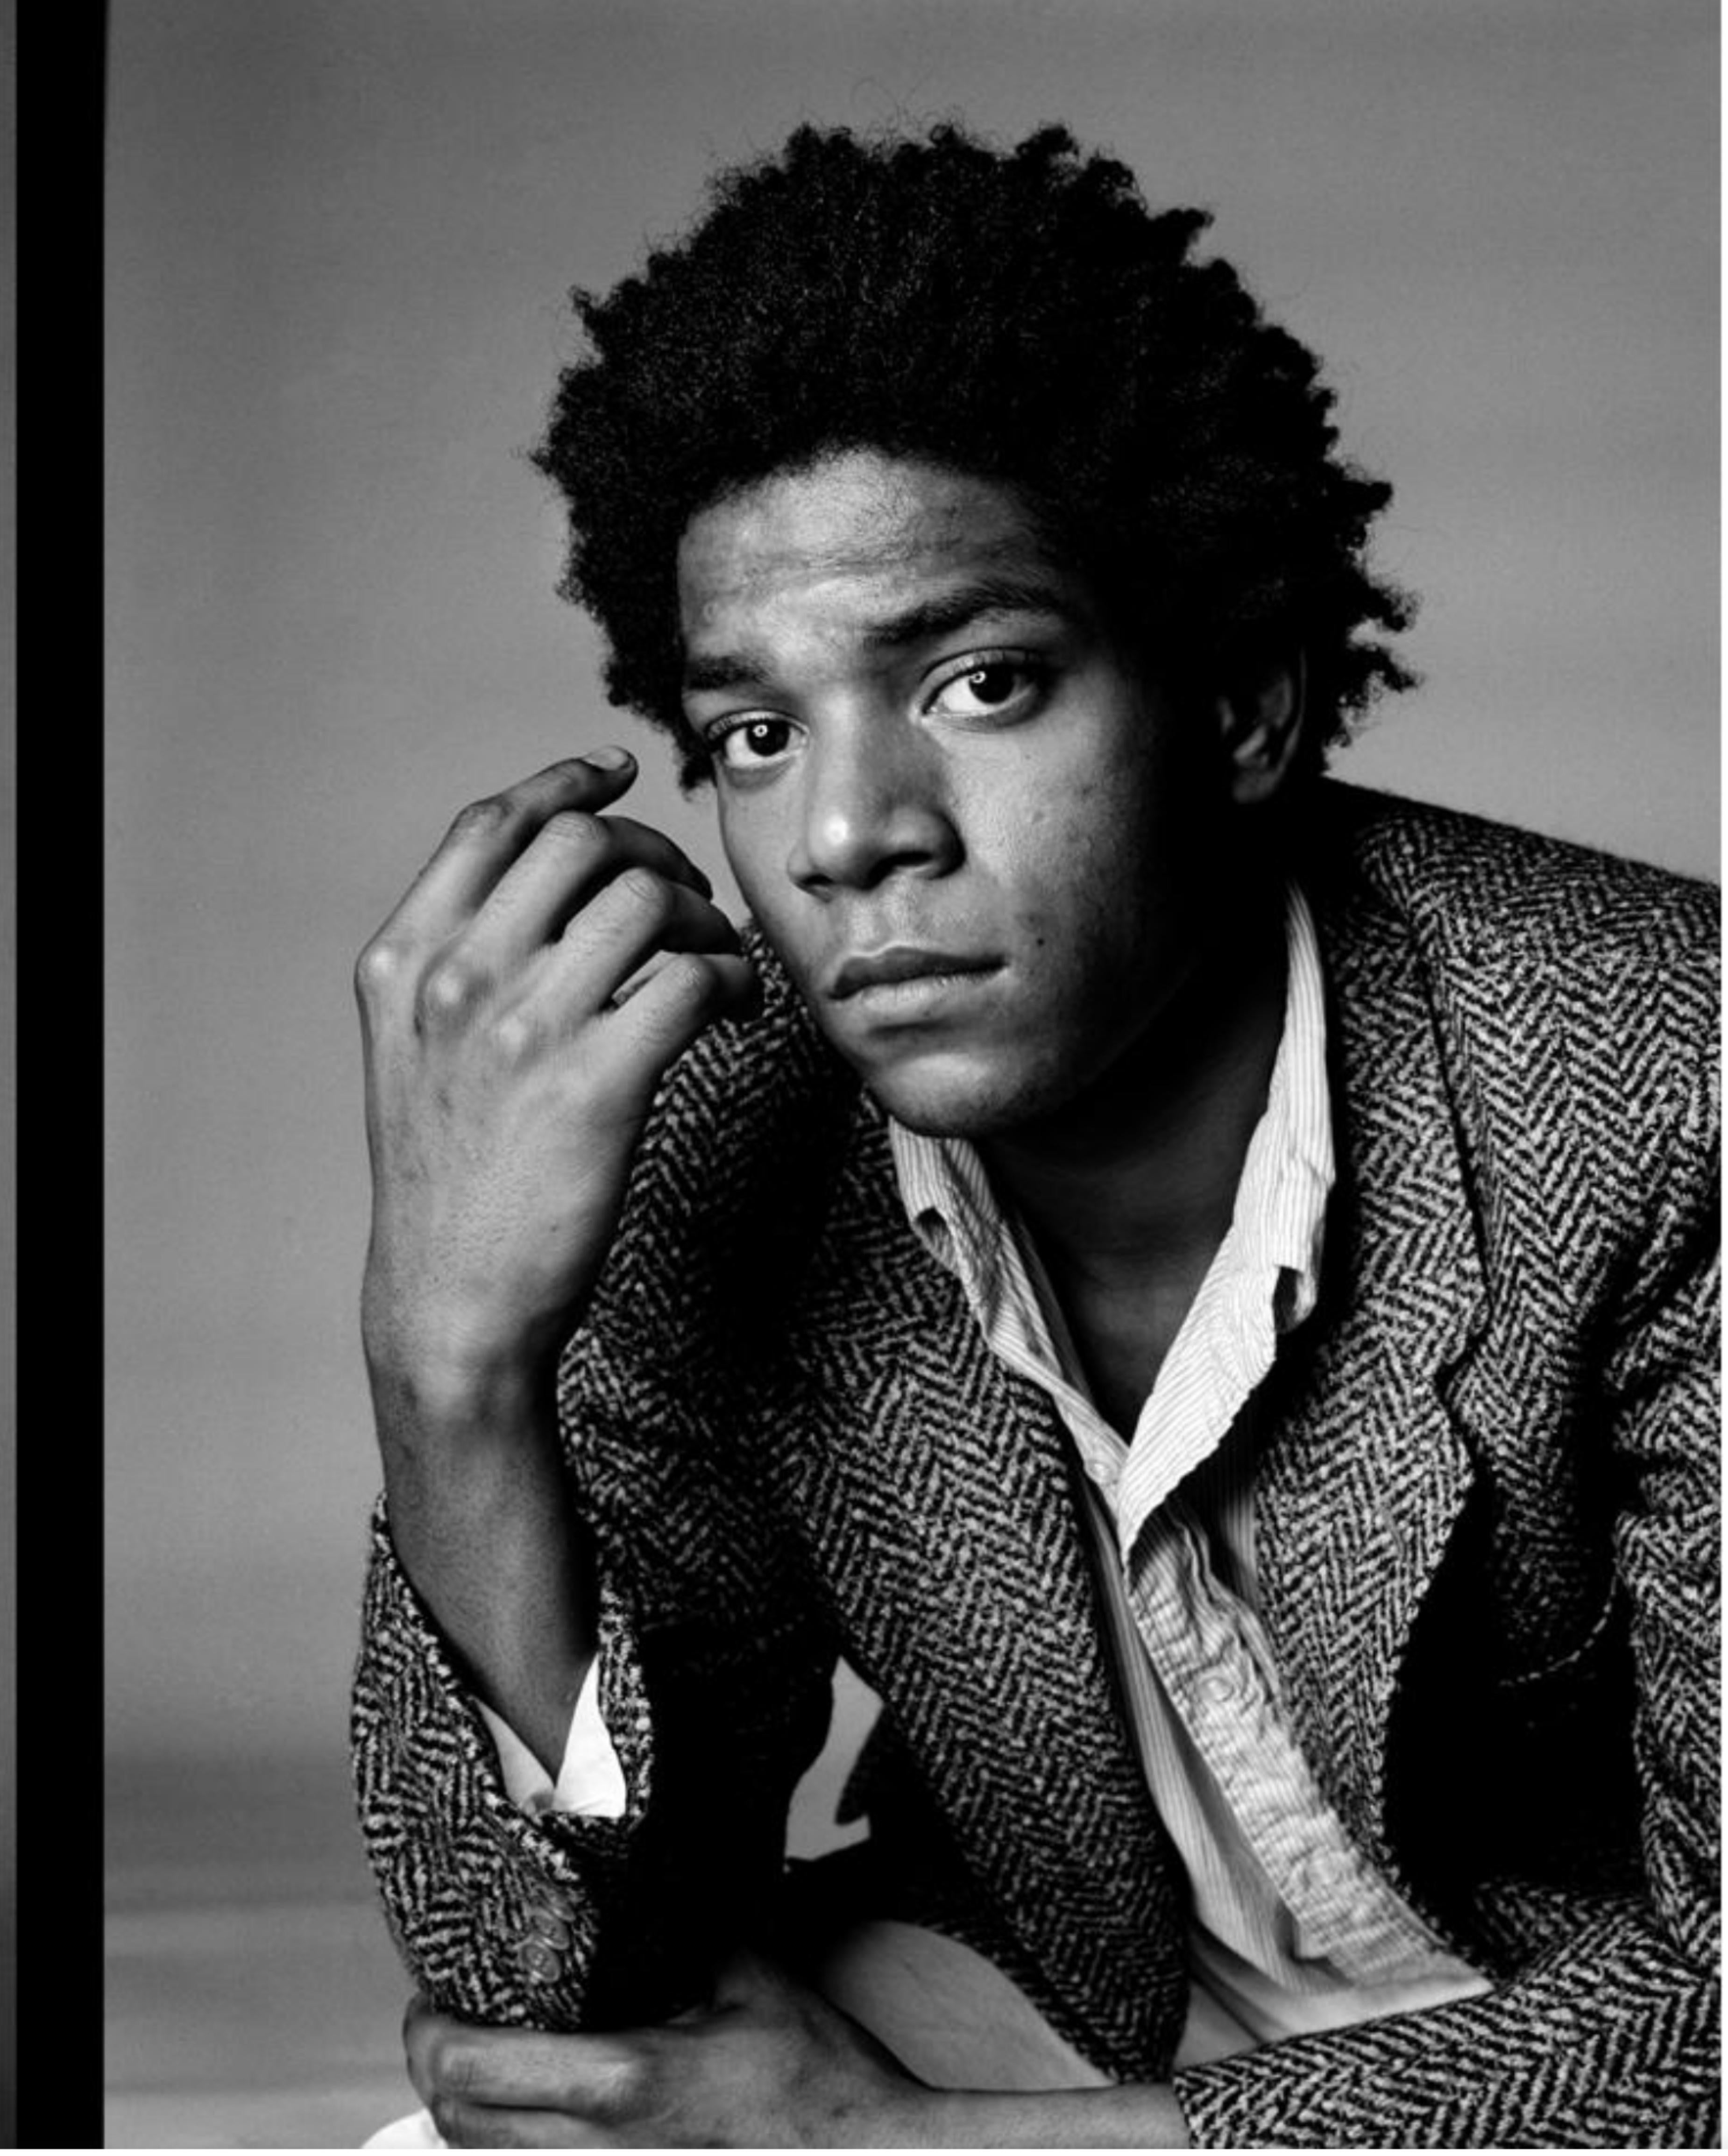 Richard Corman Portrait Photograph - Jean-Michel Basquiat VI: A Portrait, 1984